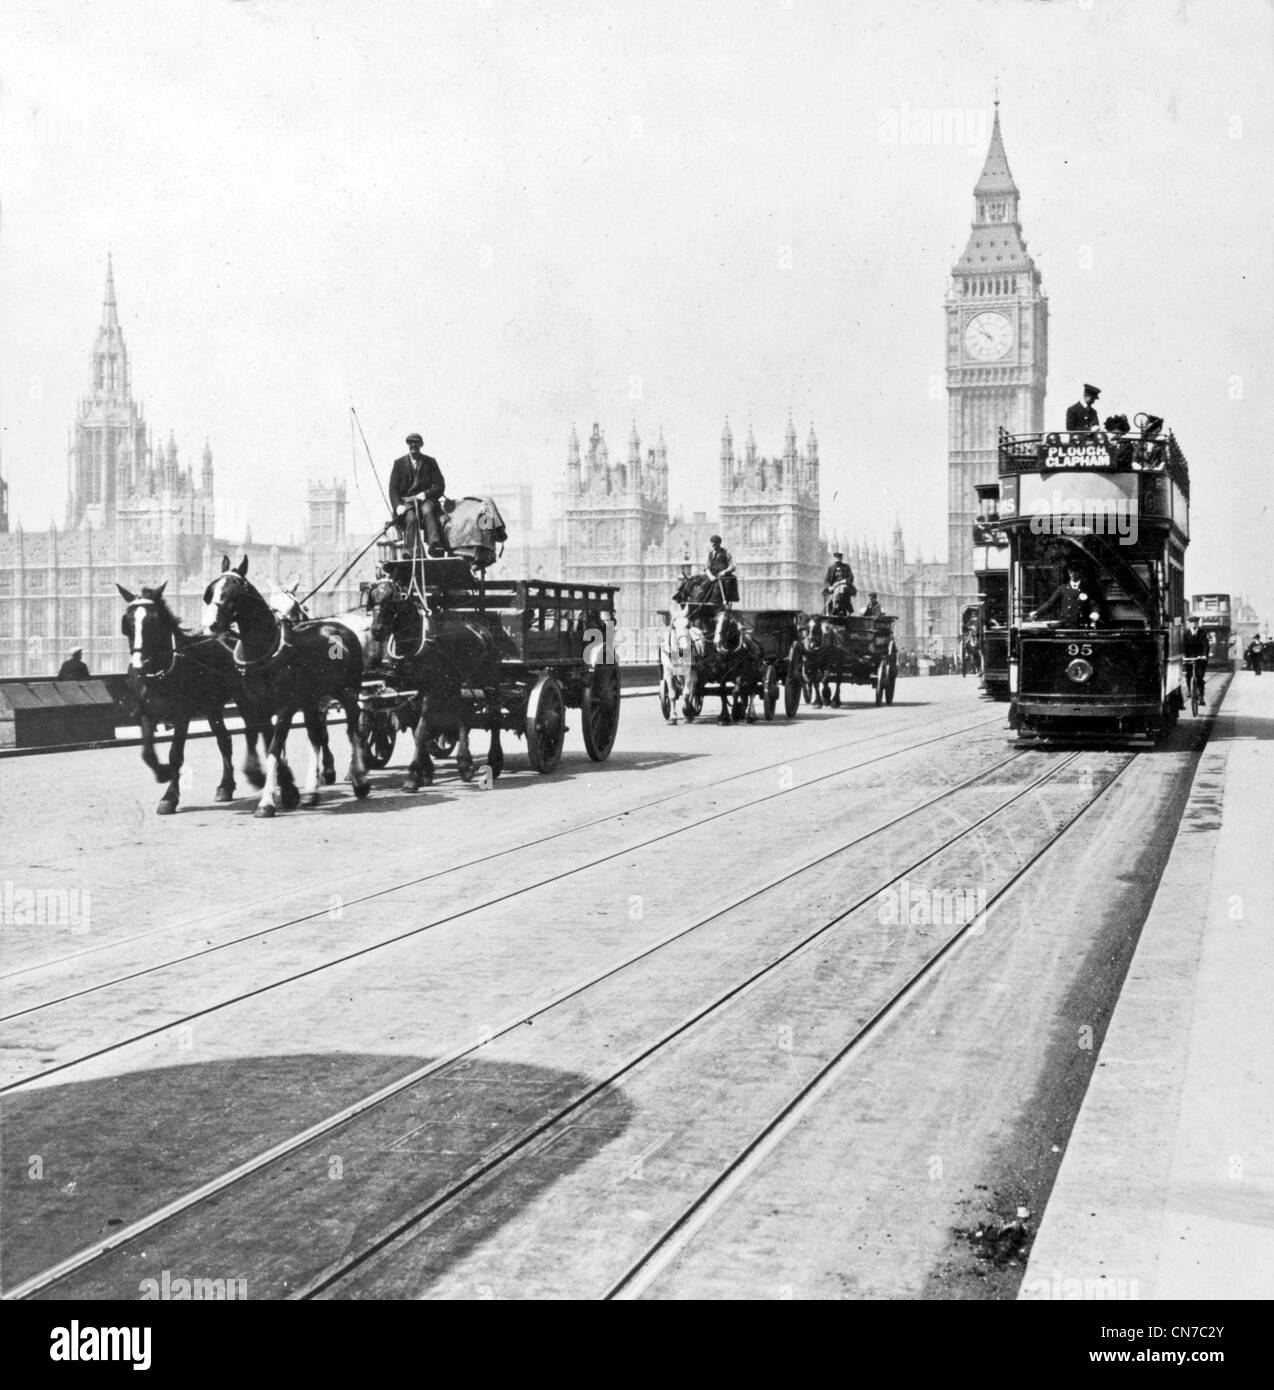 Le pont de Westminster et des chambres du Parlement, Londres, Angleterre Banque D'Images